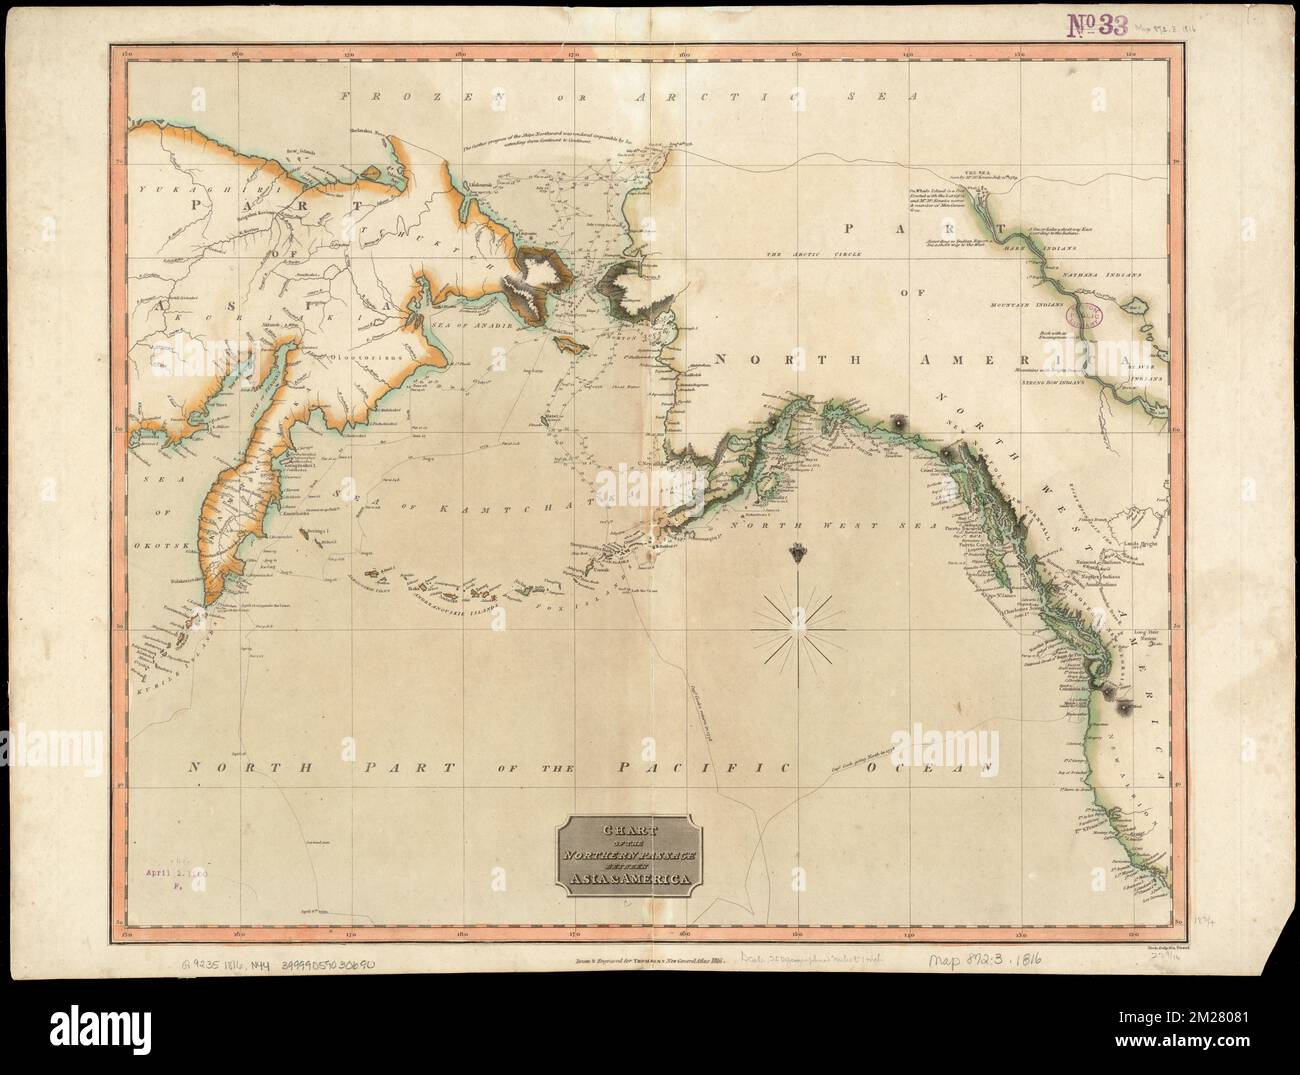 Karte der Nordpassage zwischen Asien und Amerika , Nordpazifik, Karten, Beringmeer, Karten, Bering Strait, Maps, 1816 Norman B. Leventhal Map Center Collection Stockfoto